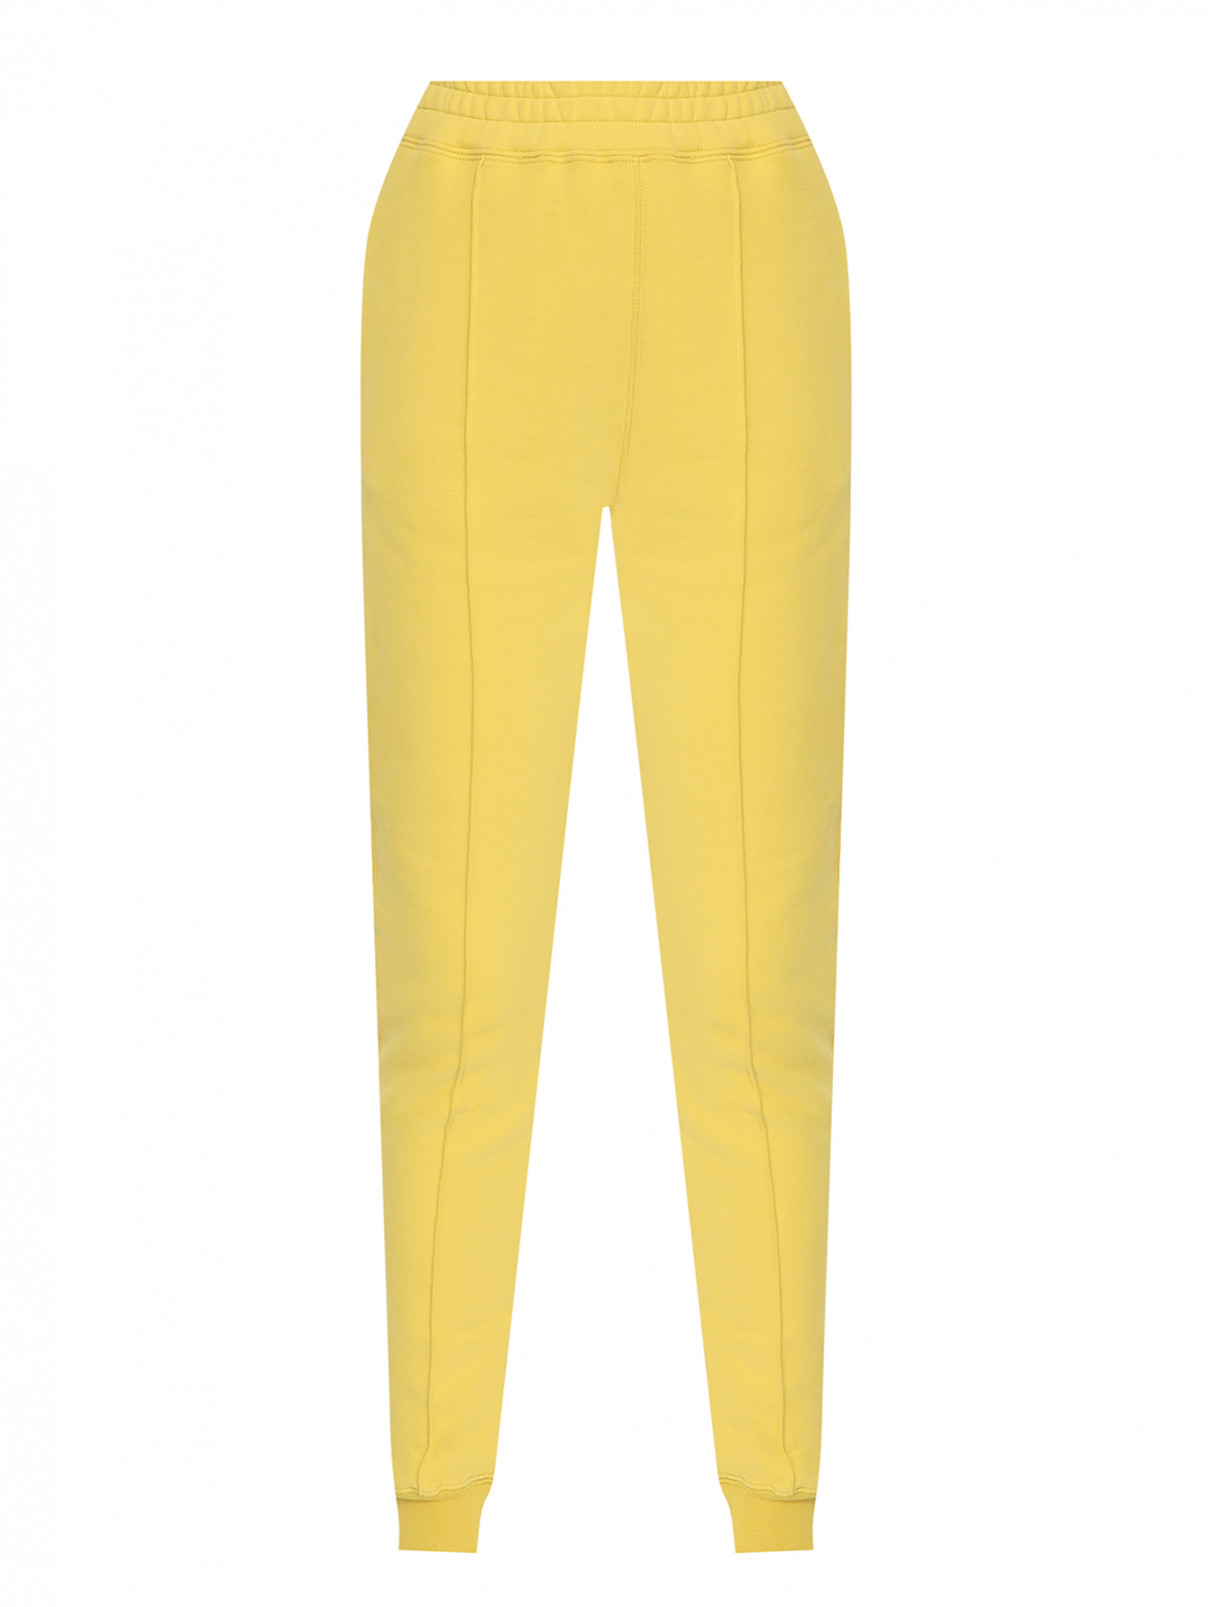 Однотонные брюки из хлопка на резинке Ermanno Scervino  –  Общий вид  – Цвет:  Желтый